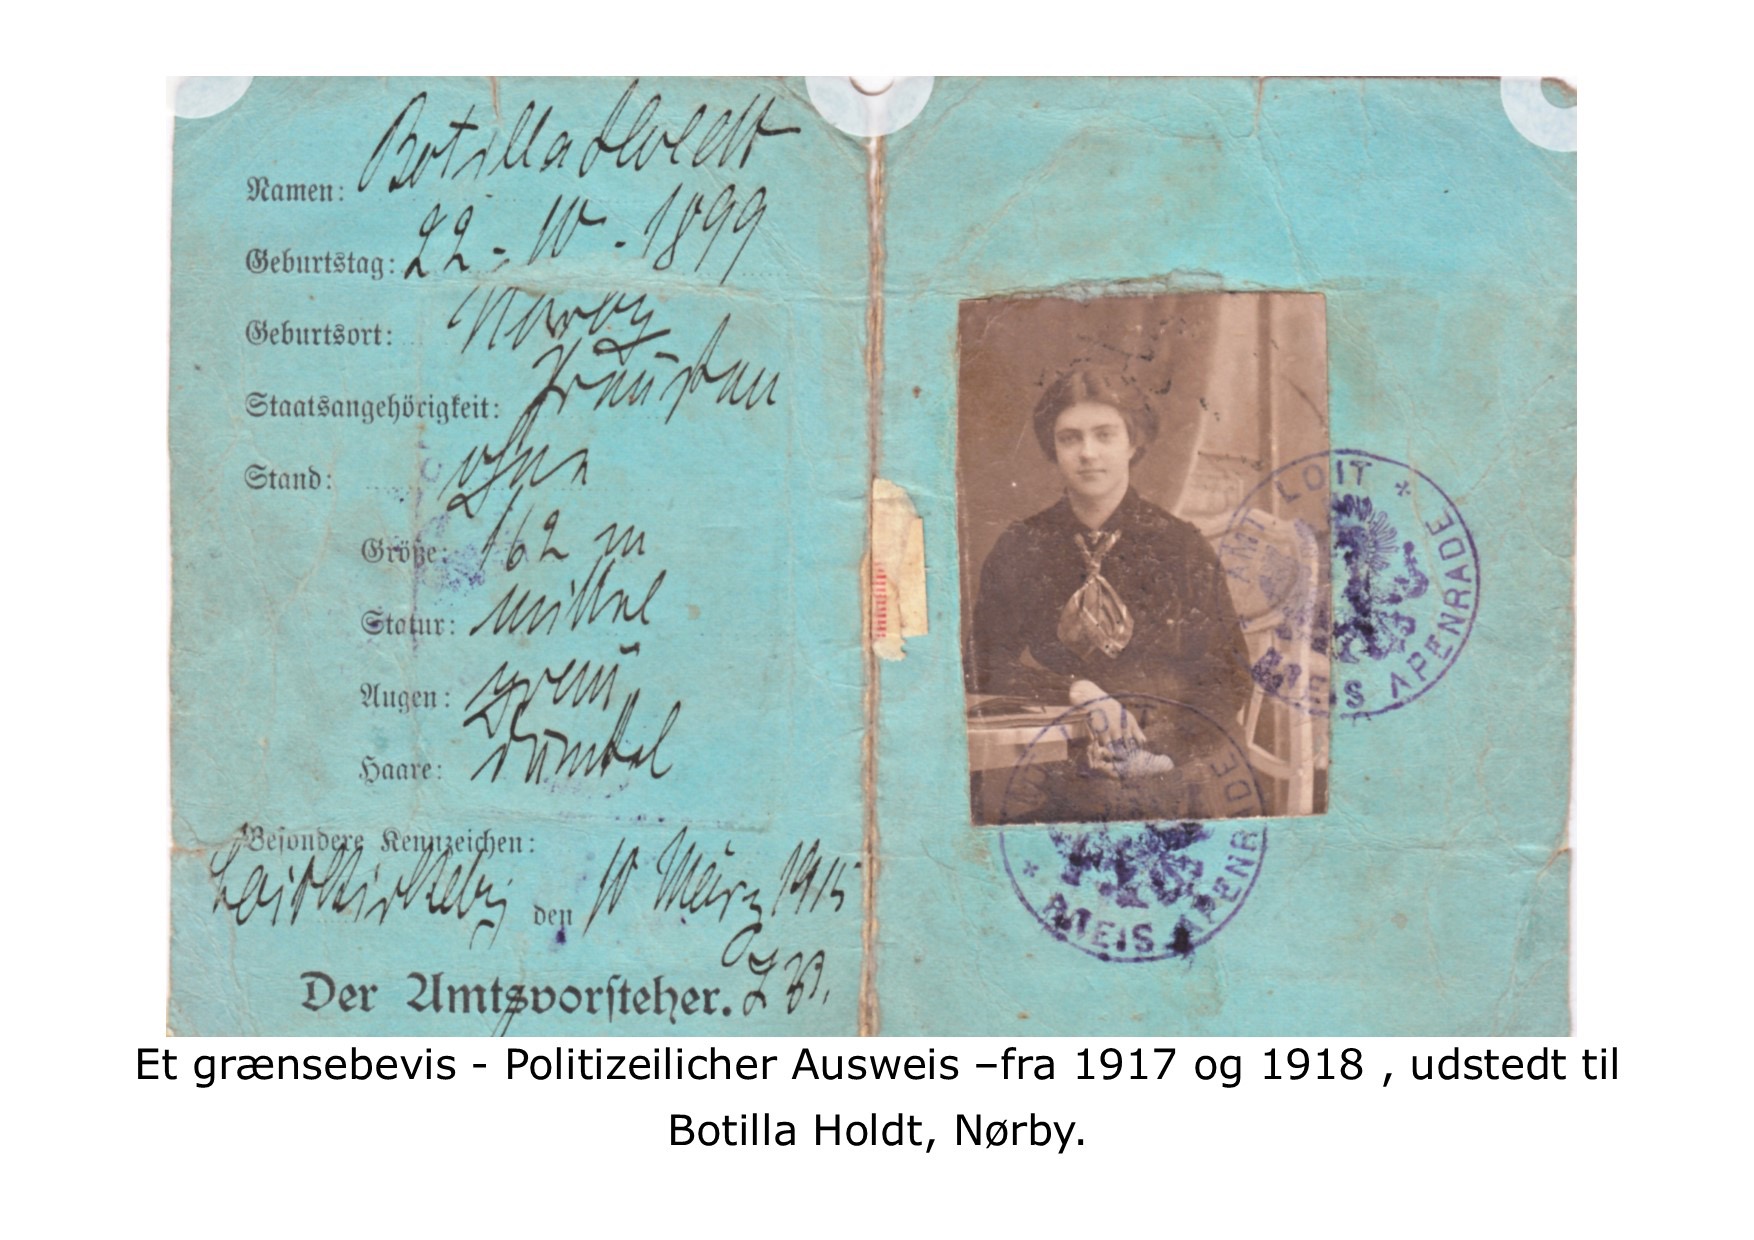 Grænsebevis polizeilicher ausweis - 1918 